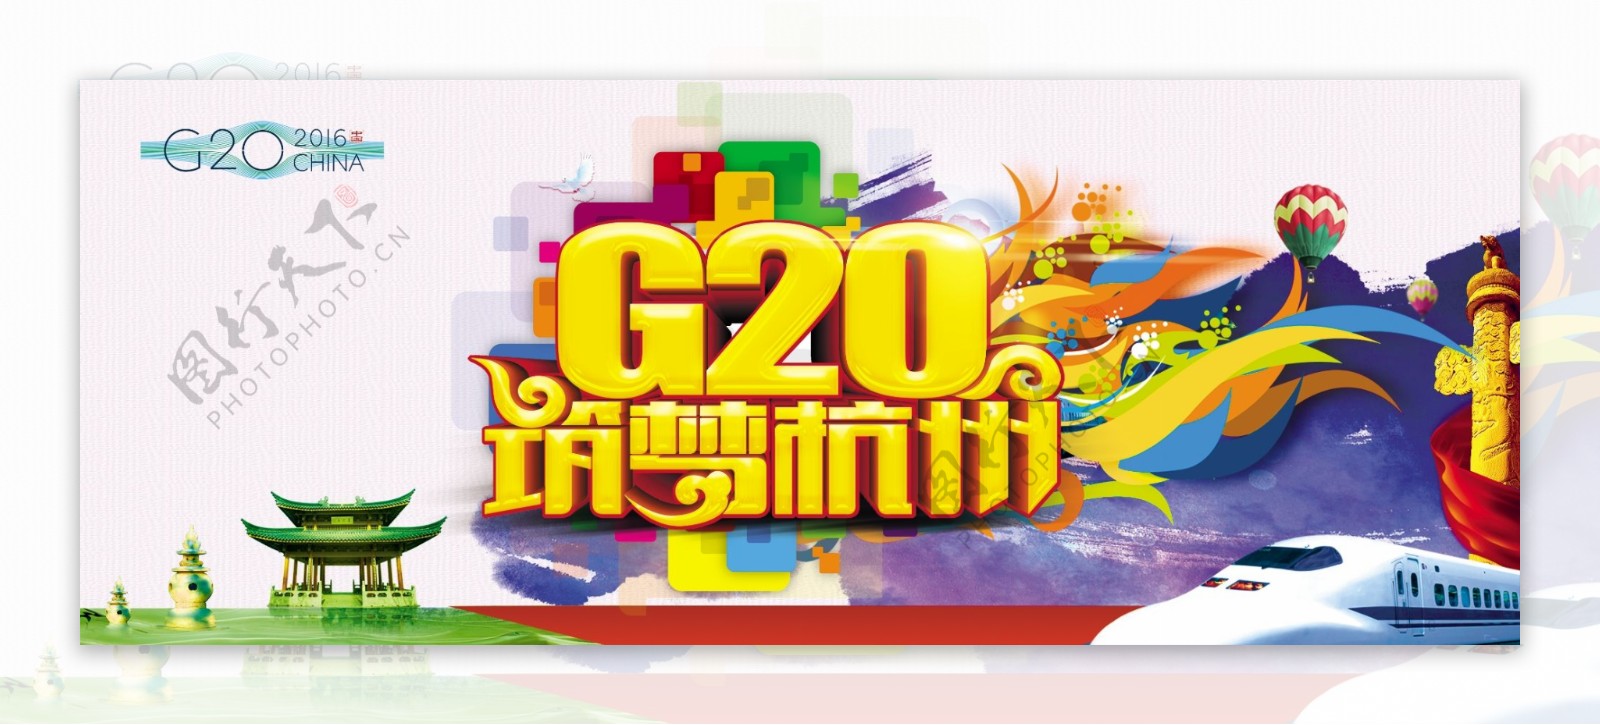 筑梦杭州G20峰会背景